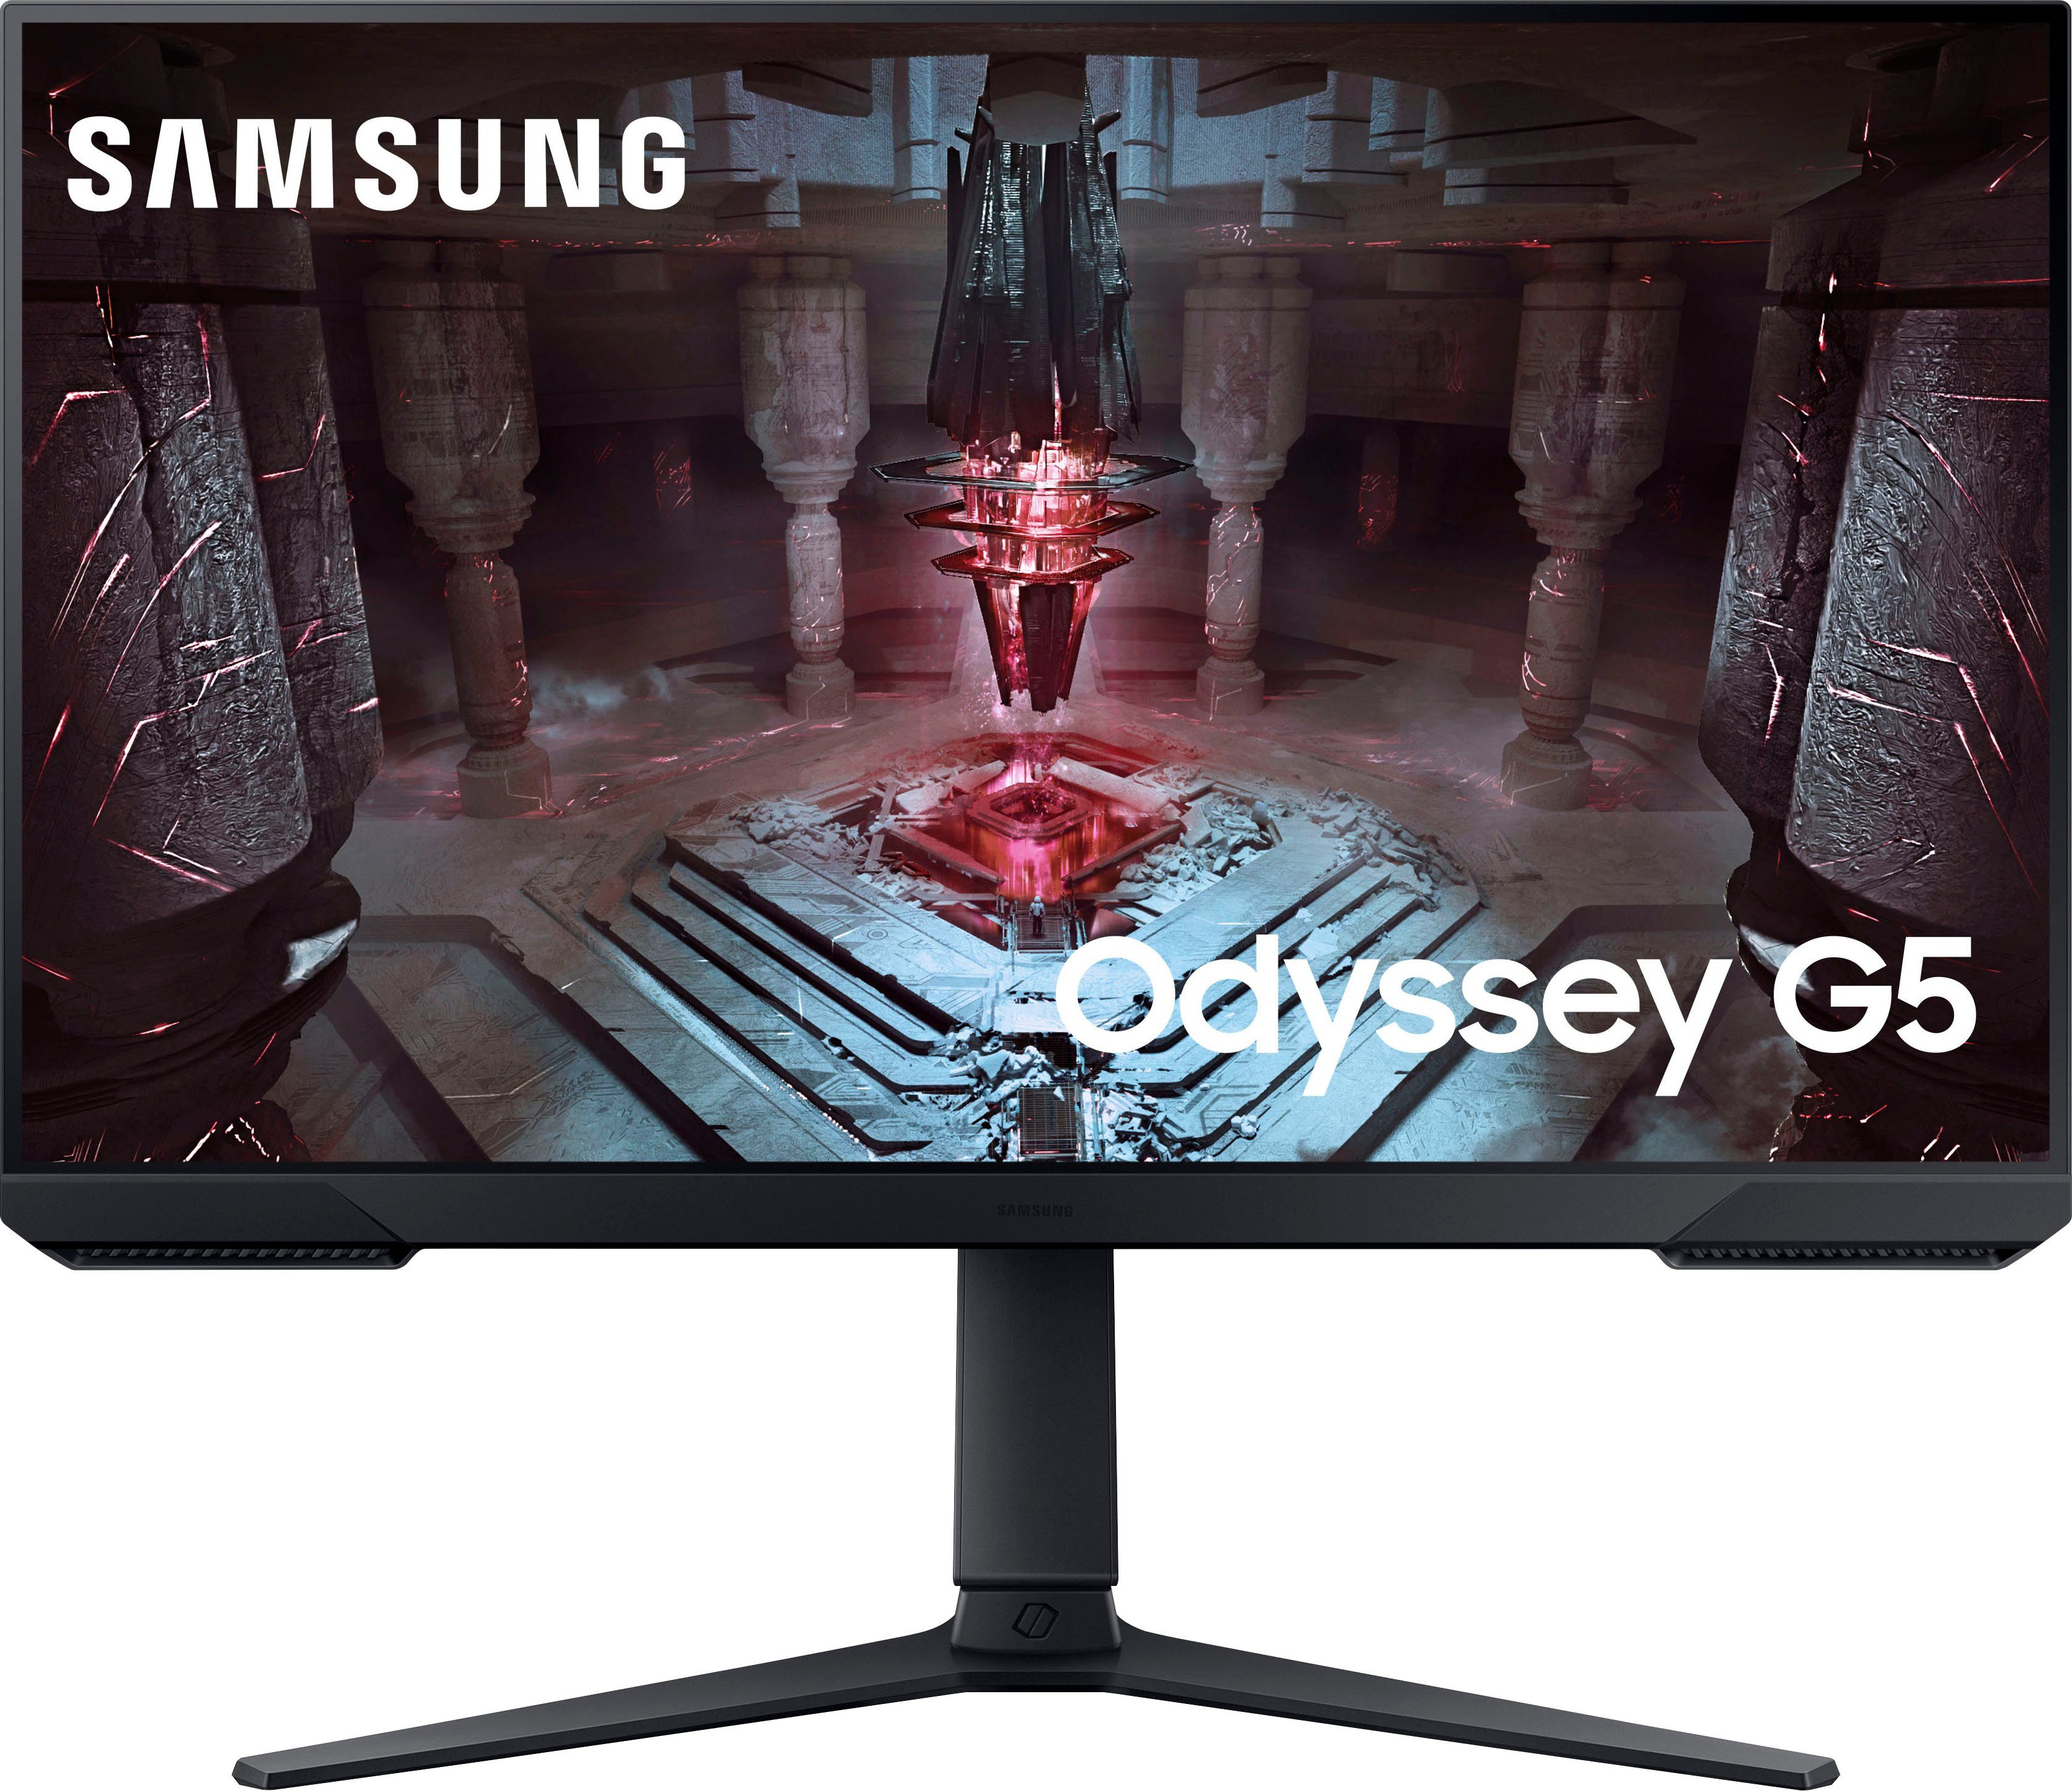 Samsung Odyssey G5 S27CG510EU LED-monitor 68.6 cm (27 inch) Energielabel F (A G) 2560 x 1440 Pixel Q